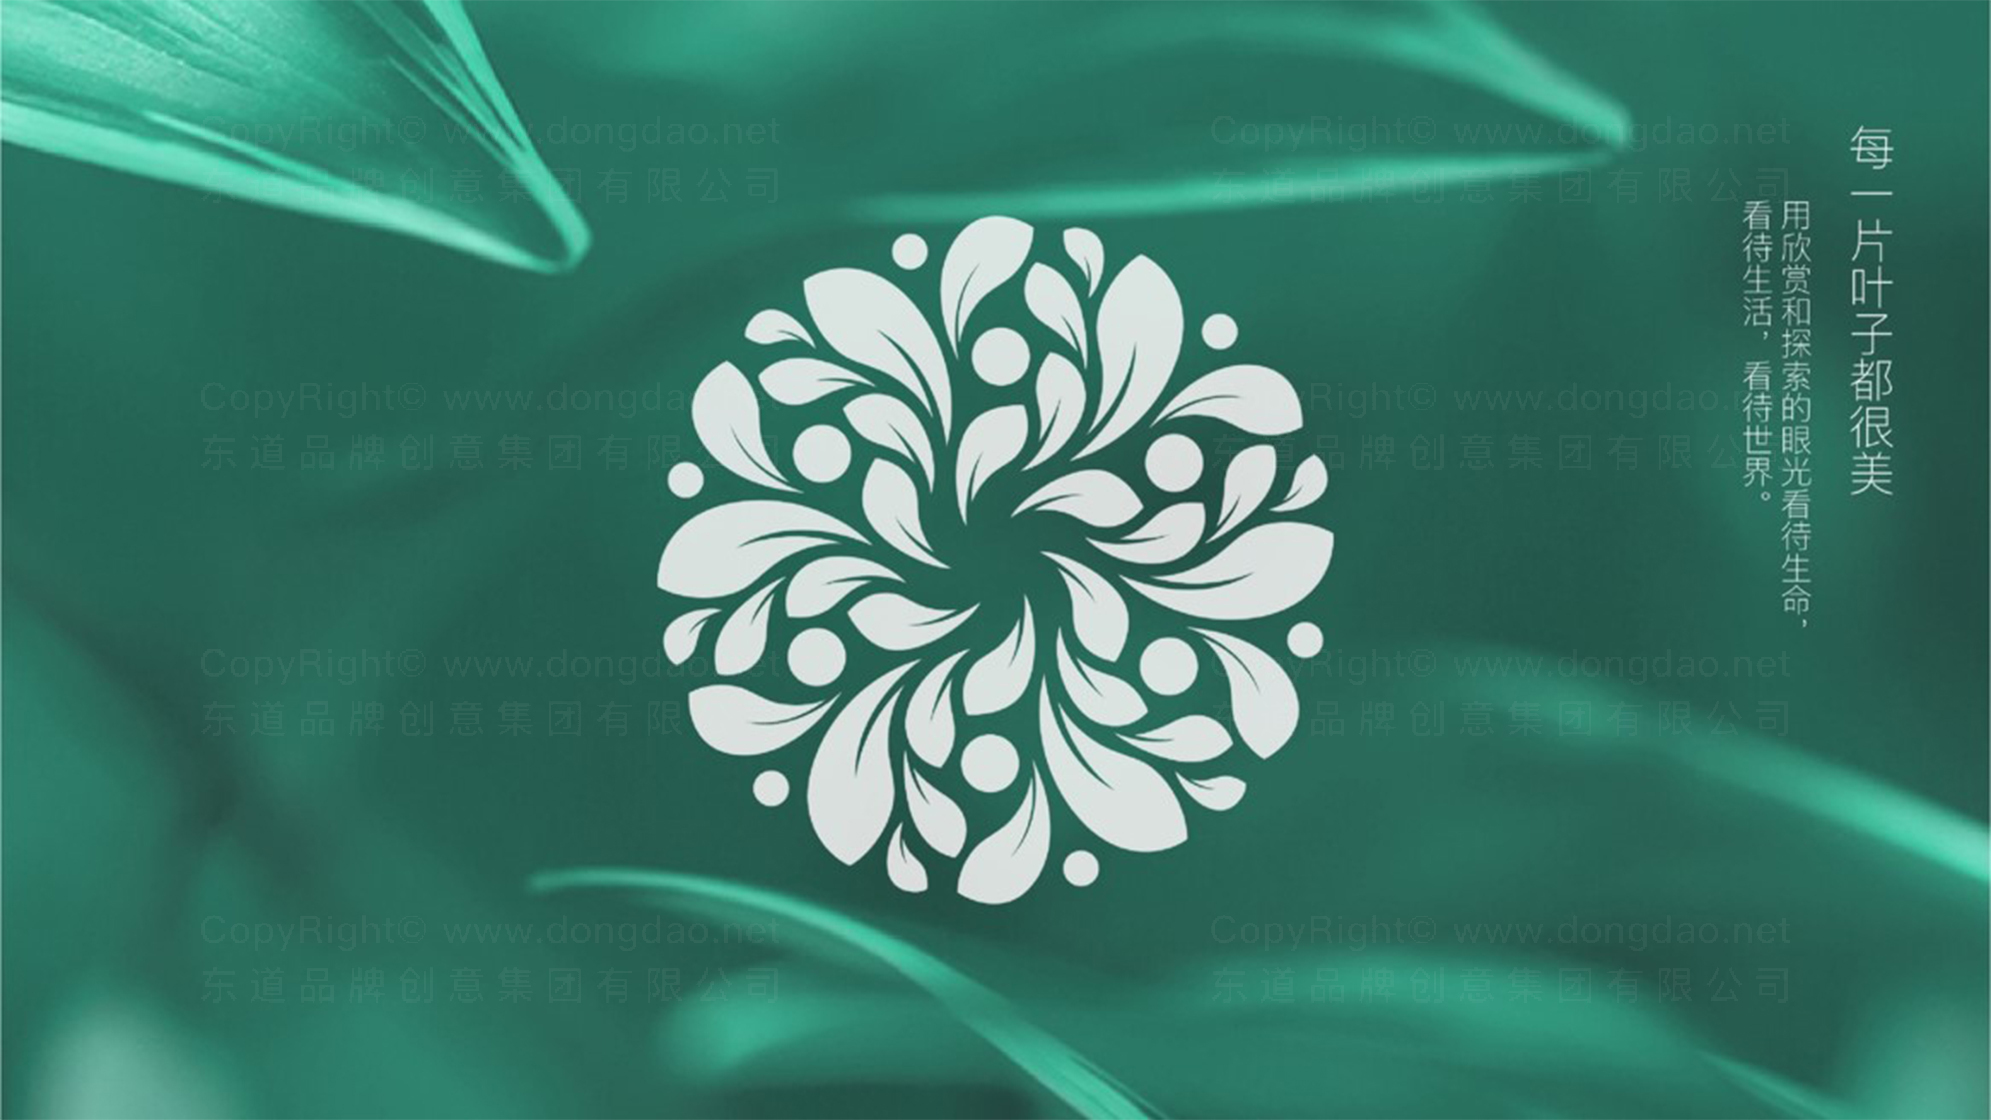 绿叶生物科技logo设计图片素材大全案例欣赏